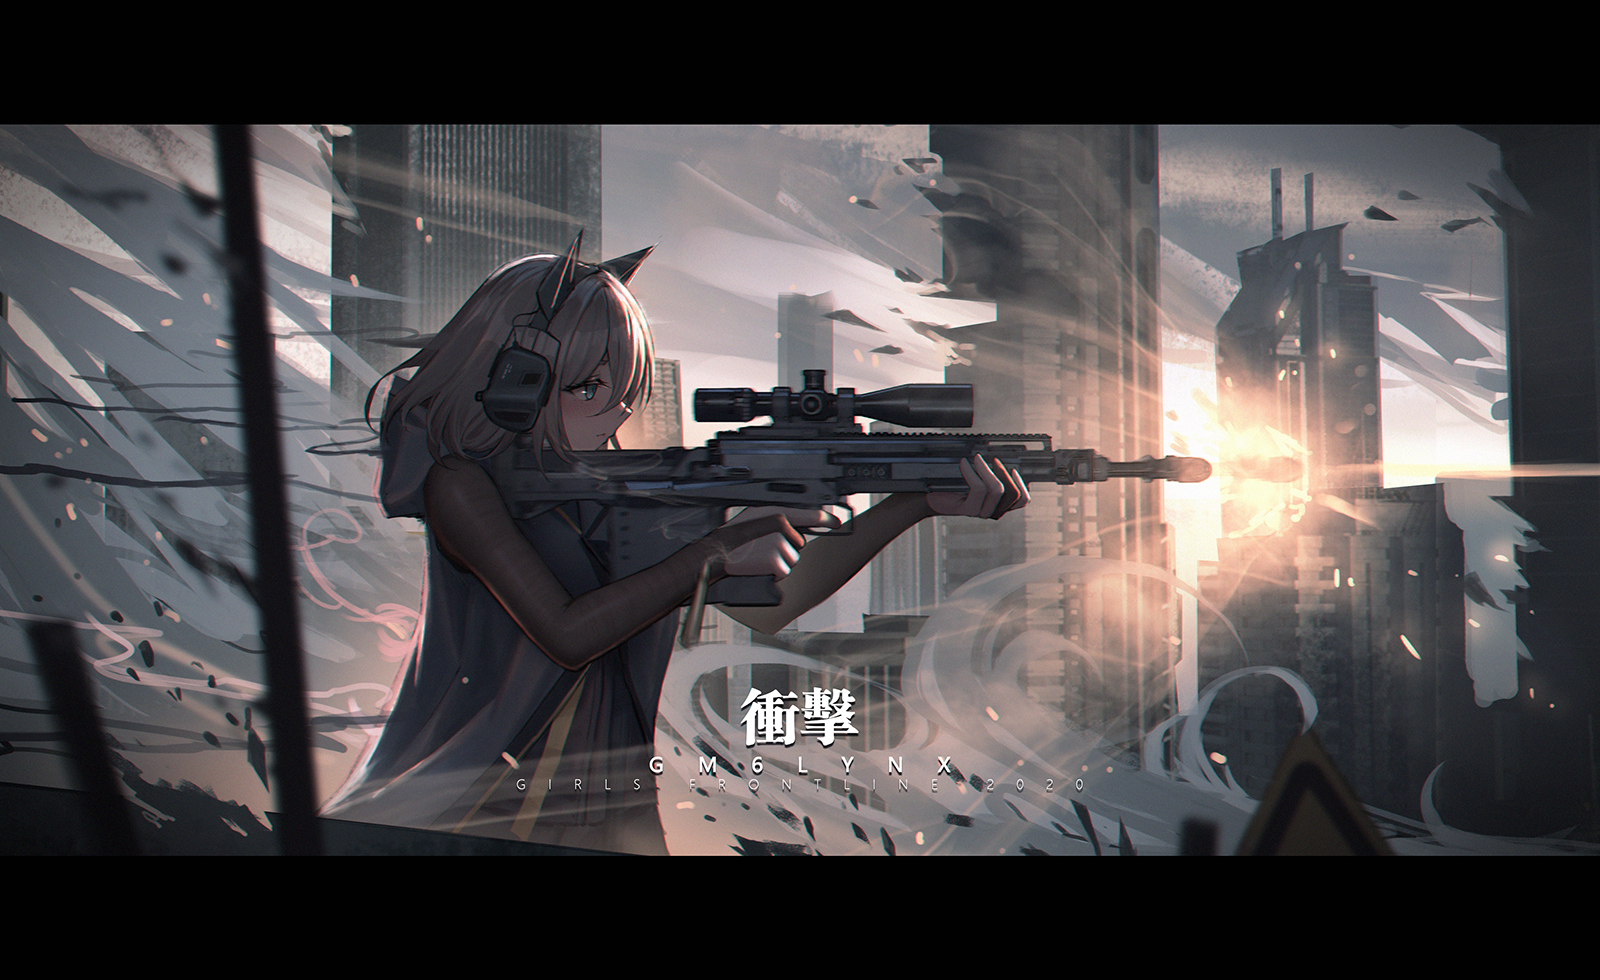 Anime Anime Girls Digital Art Artwork 2D Portrait Rifles Girls Frontline Yurichtofen 1600x980